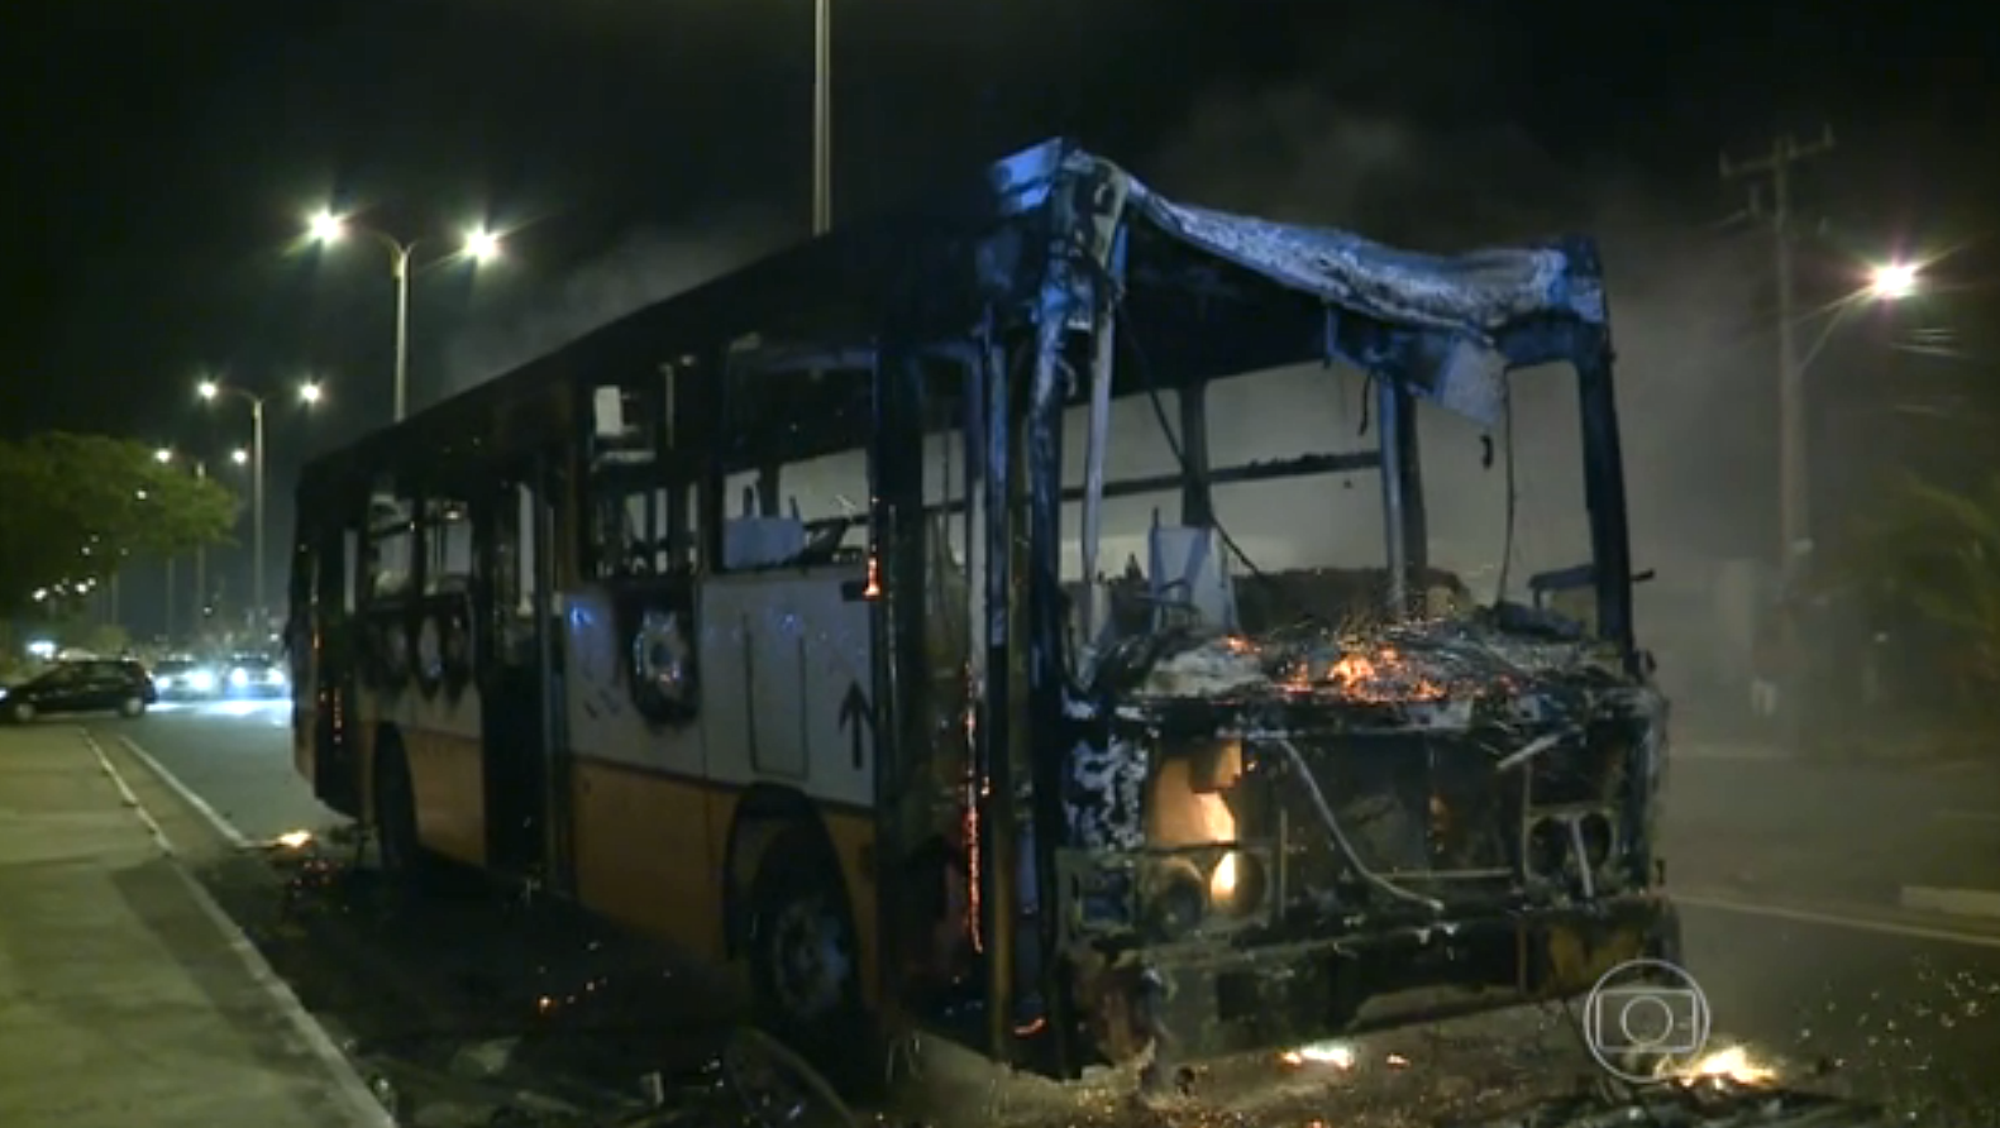 Maranhão buses burned, Brazil News